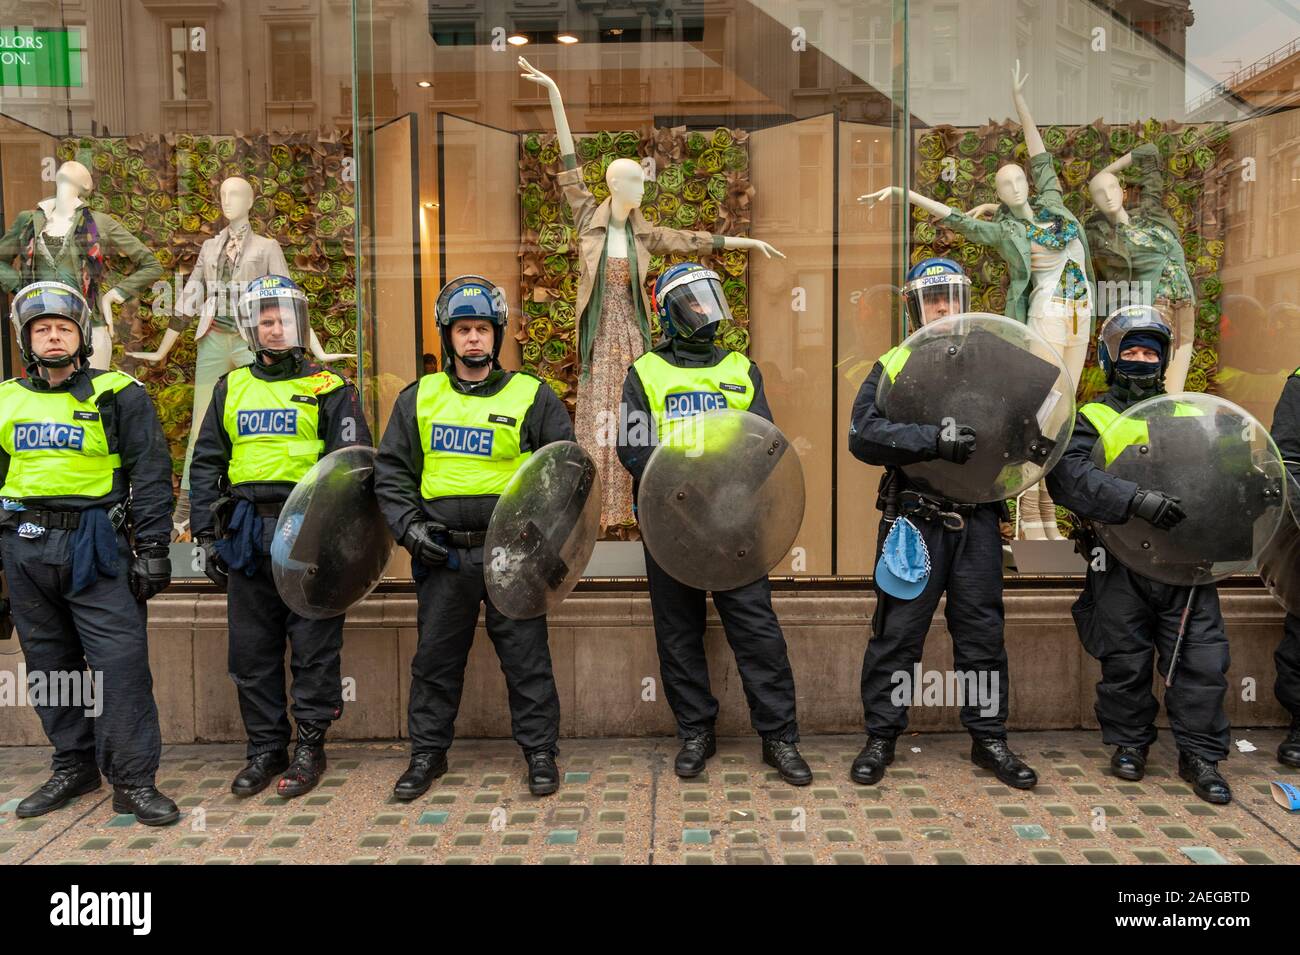 Línea de policía antimotines proteger Londres shopfront durante la demostración, UK Foto de stock